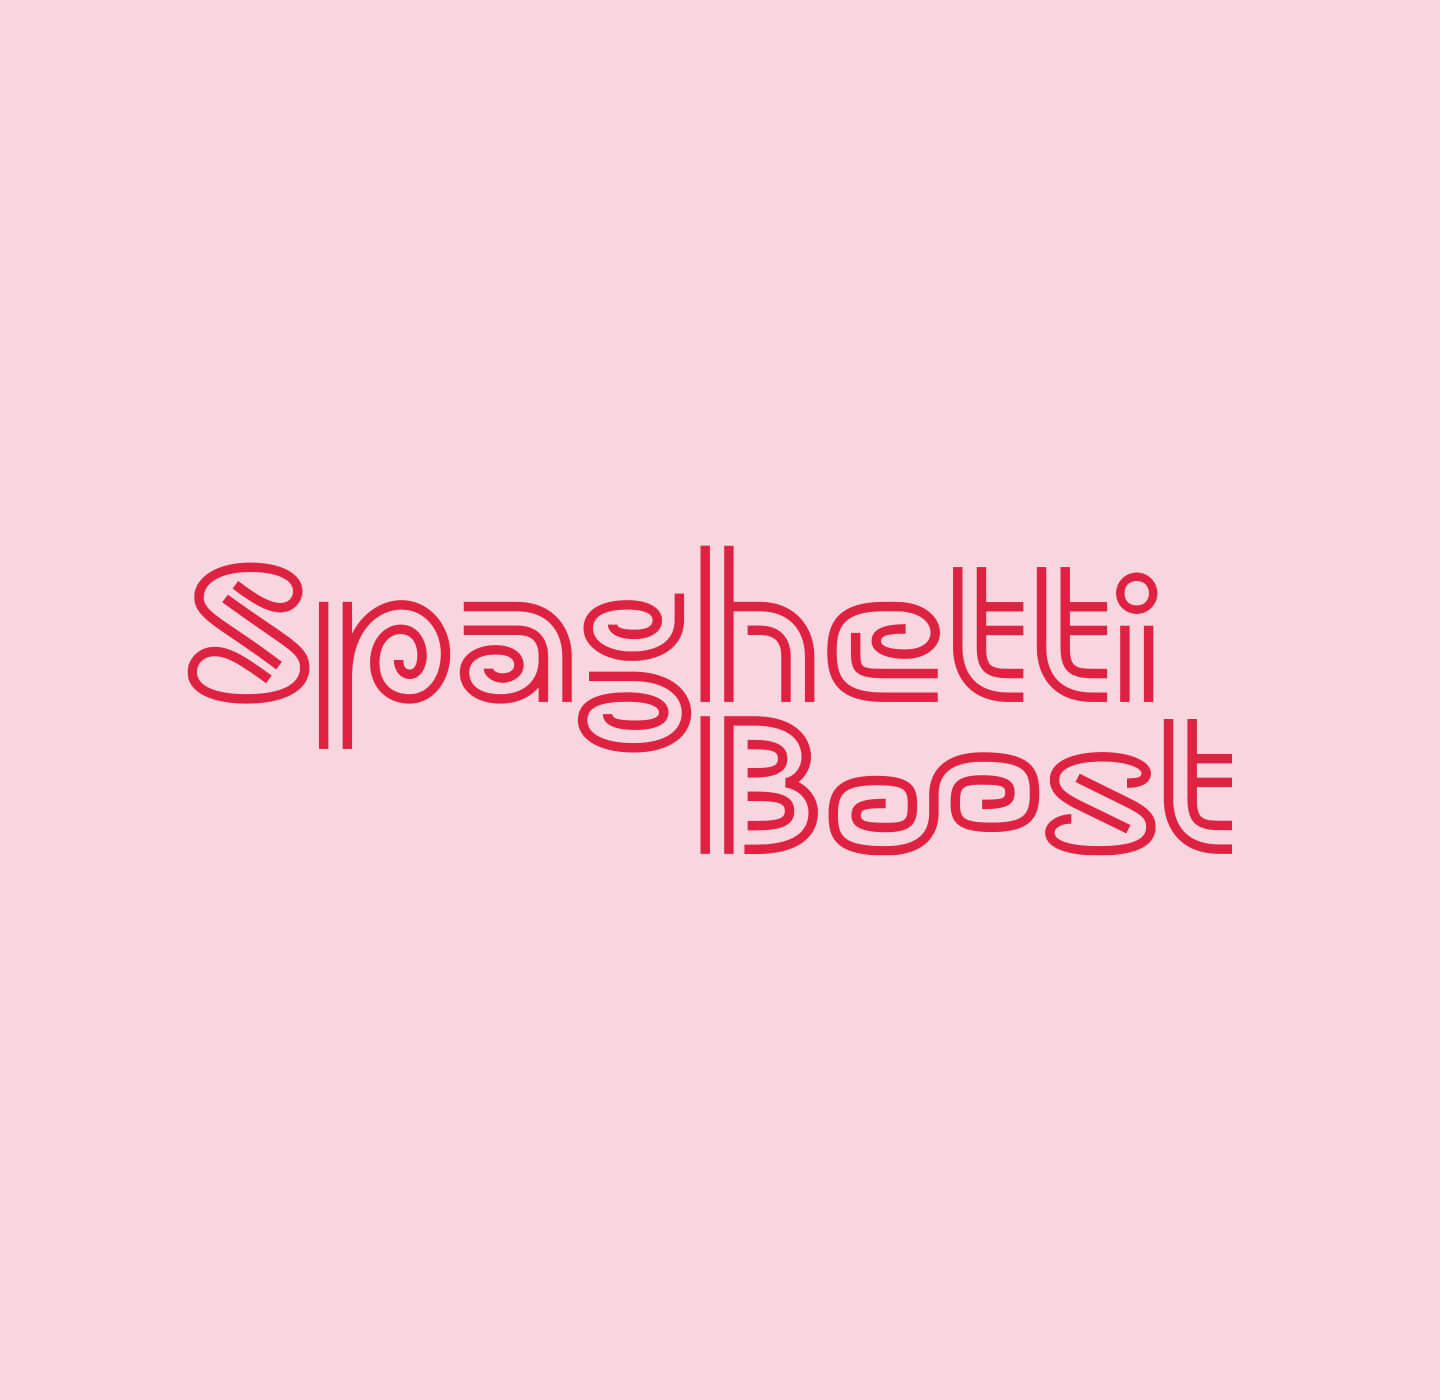 Spaghetti Boost_cover mobile